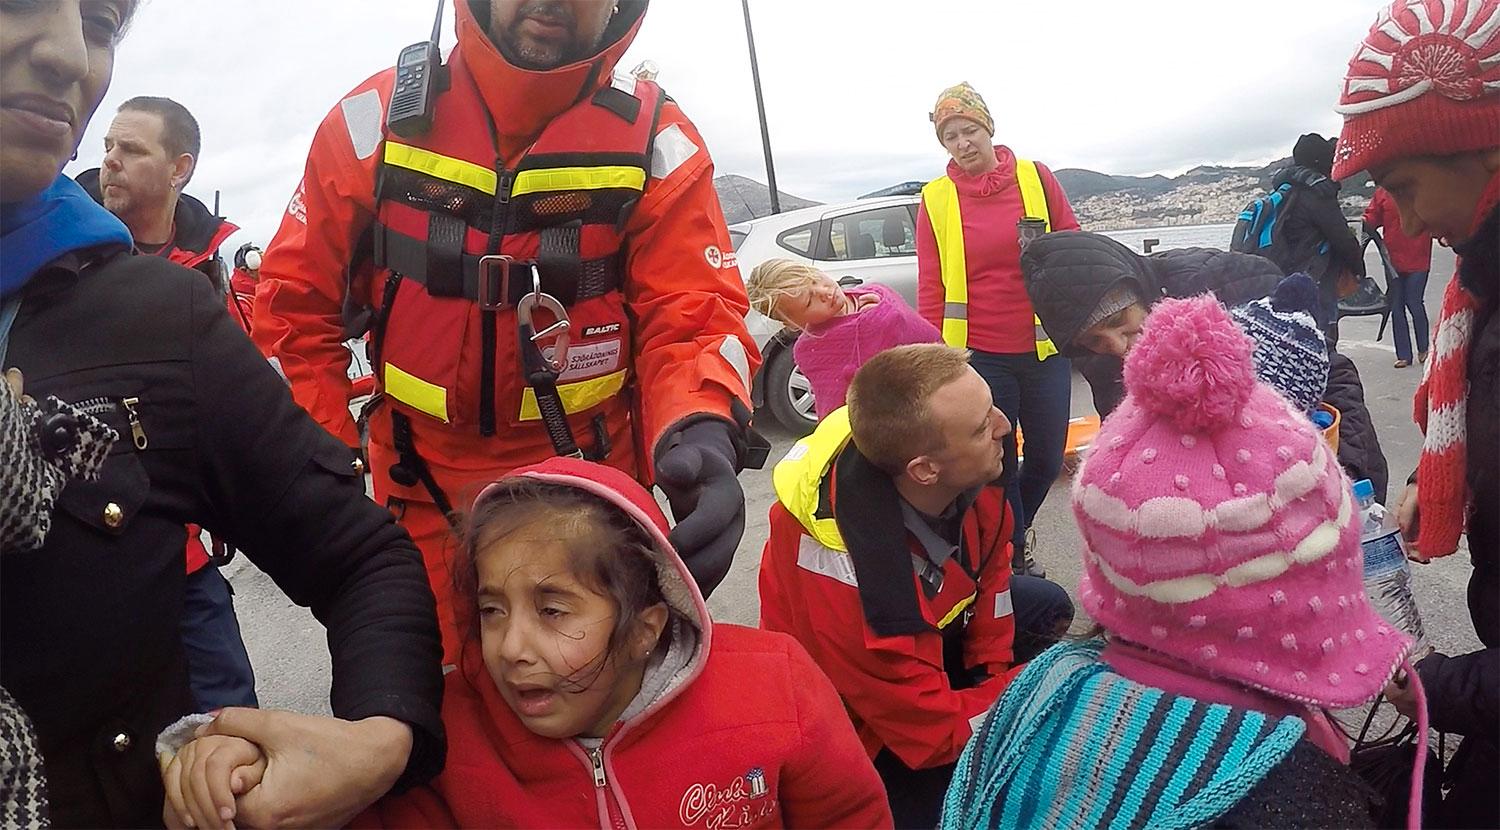 Fler än 65 000 000 har tvingats från sina hem, enligt FN:s senaste rapport. Bild från en räddningsinsats av Gula båtarna.